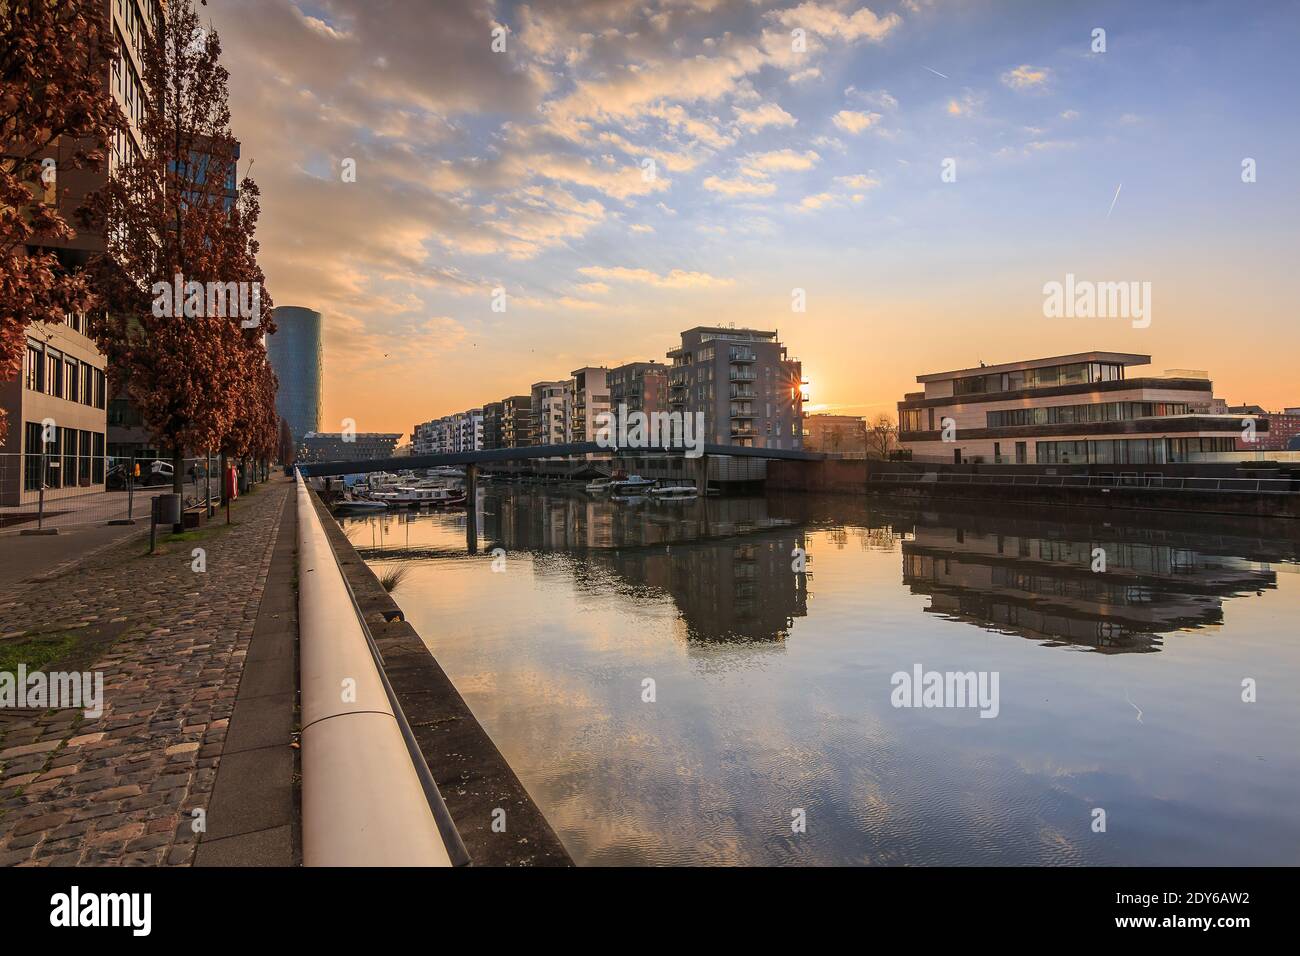 Kanal vom Main in Frankfurt. Wohngebiet am Morgen bei Sonnenaufgang. Wasserfront mit Reflexion. Blauer Himmel und Wolken. Ufer im por Stockfoto